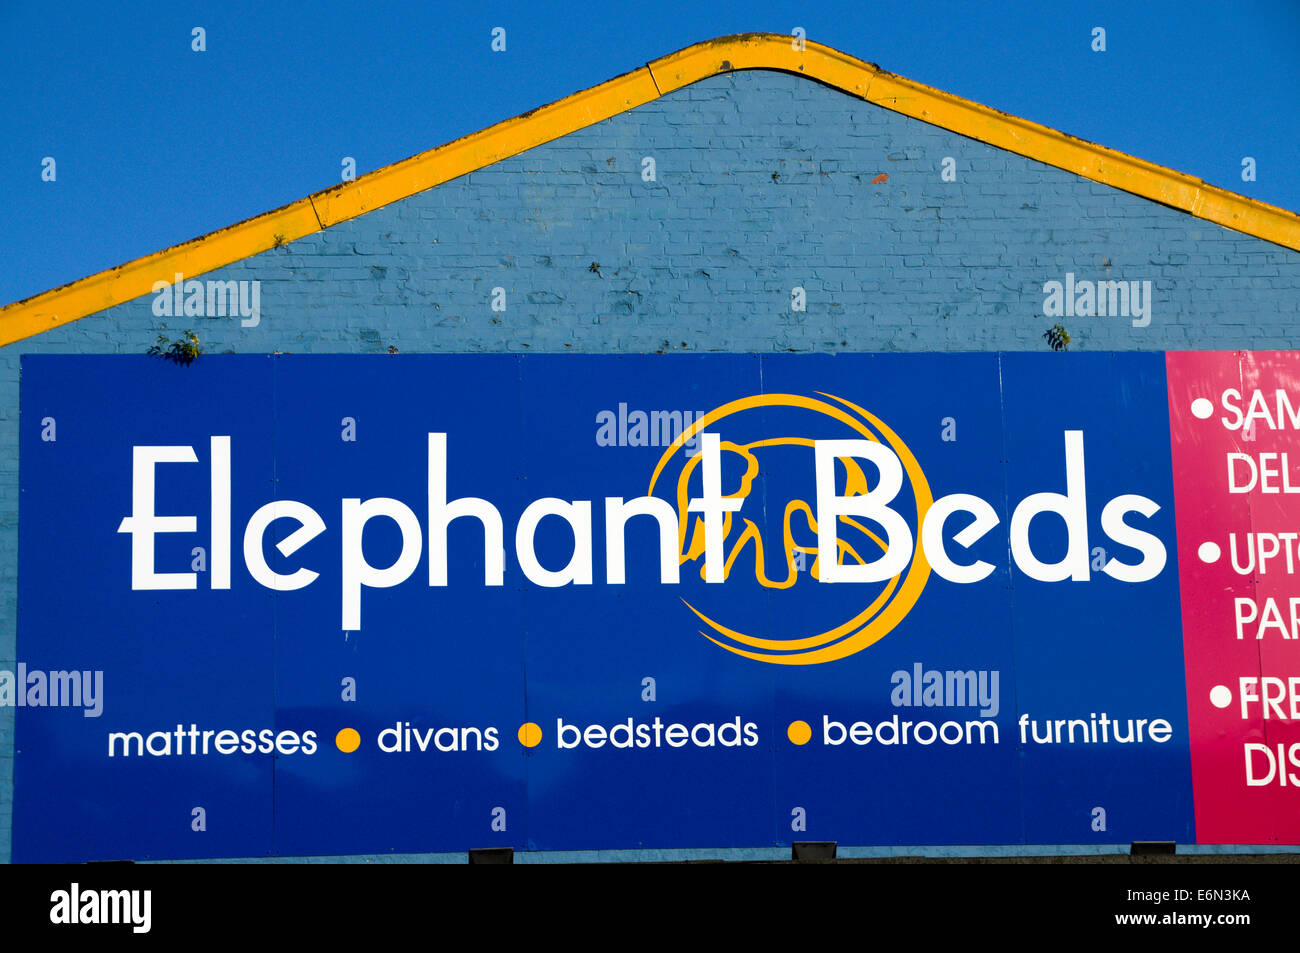 Lits salles d'éléphant, Penarth Road, Cardiff, Pays de Galles. Banque D'Images